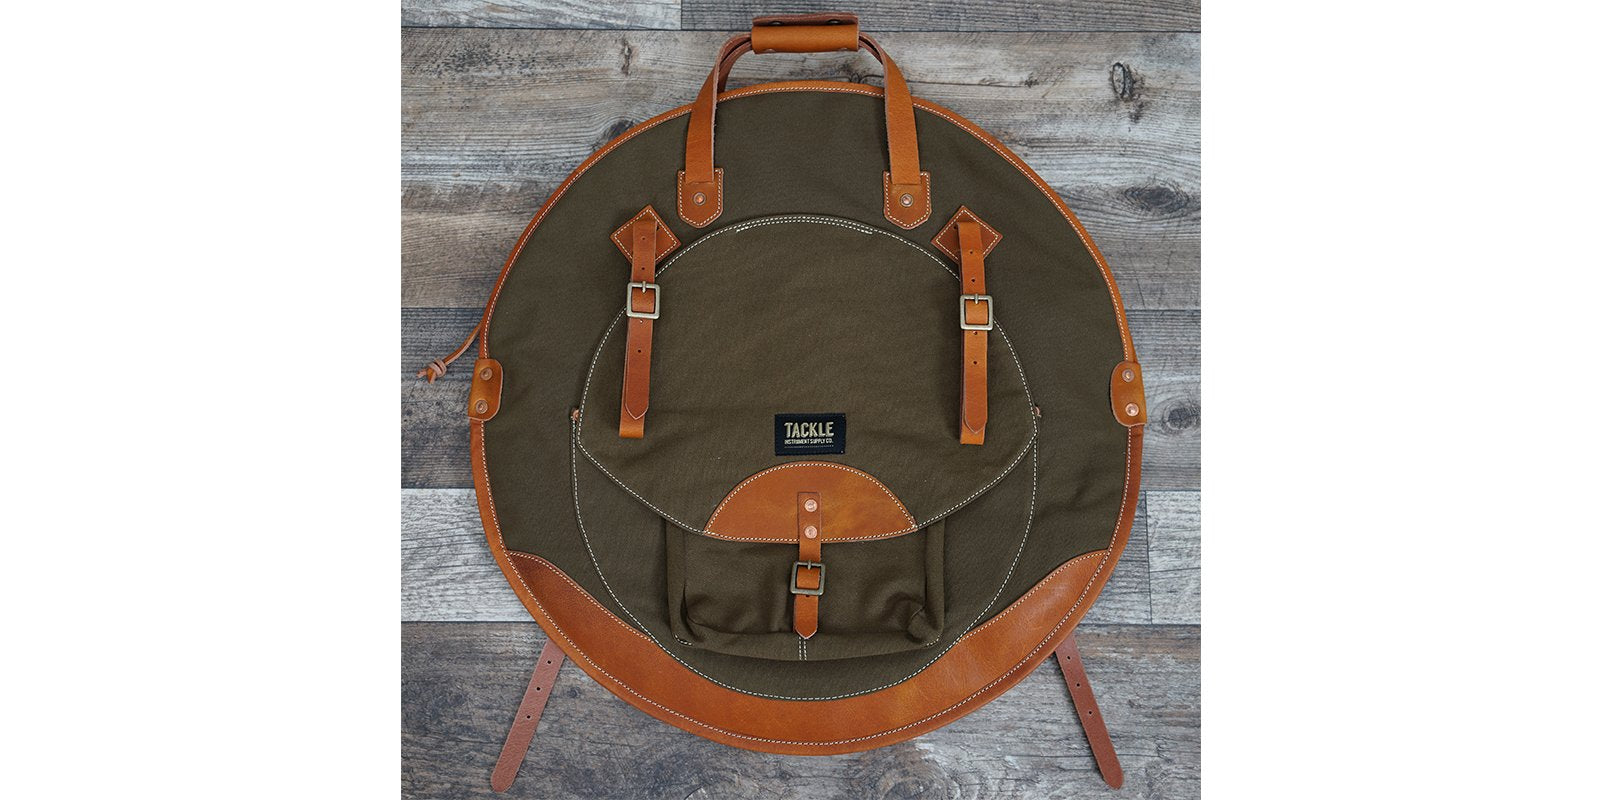 Tackle Instrument Supply Co. Bi-Fold Stick Bag Black – Badges Drum